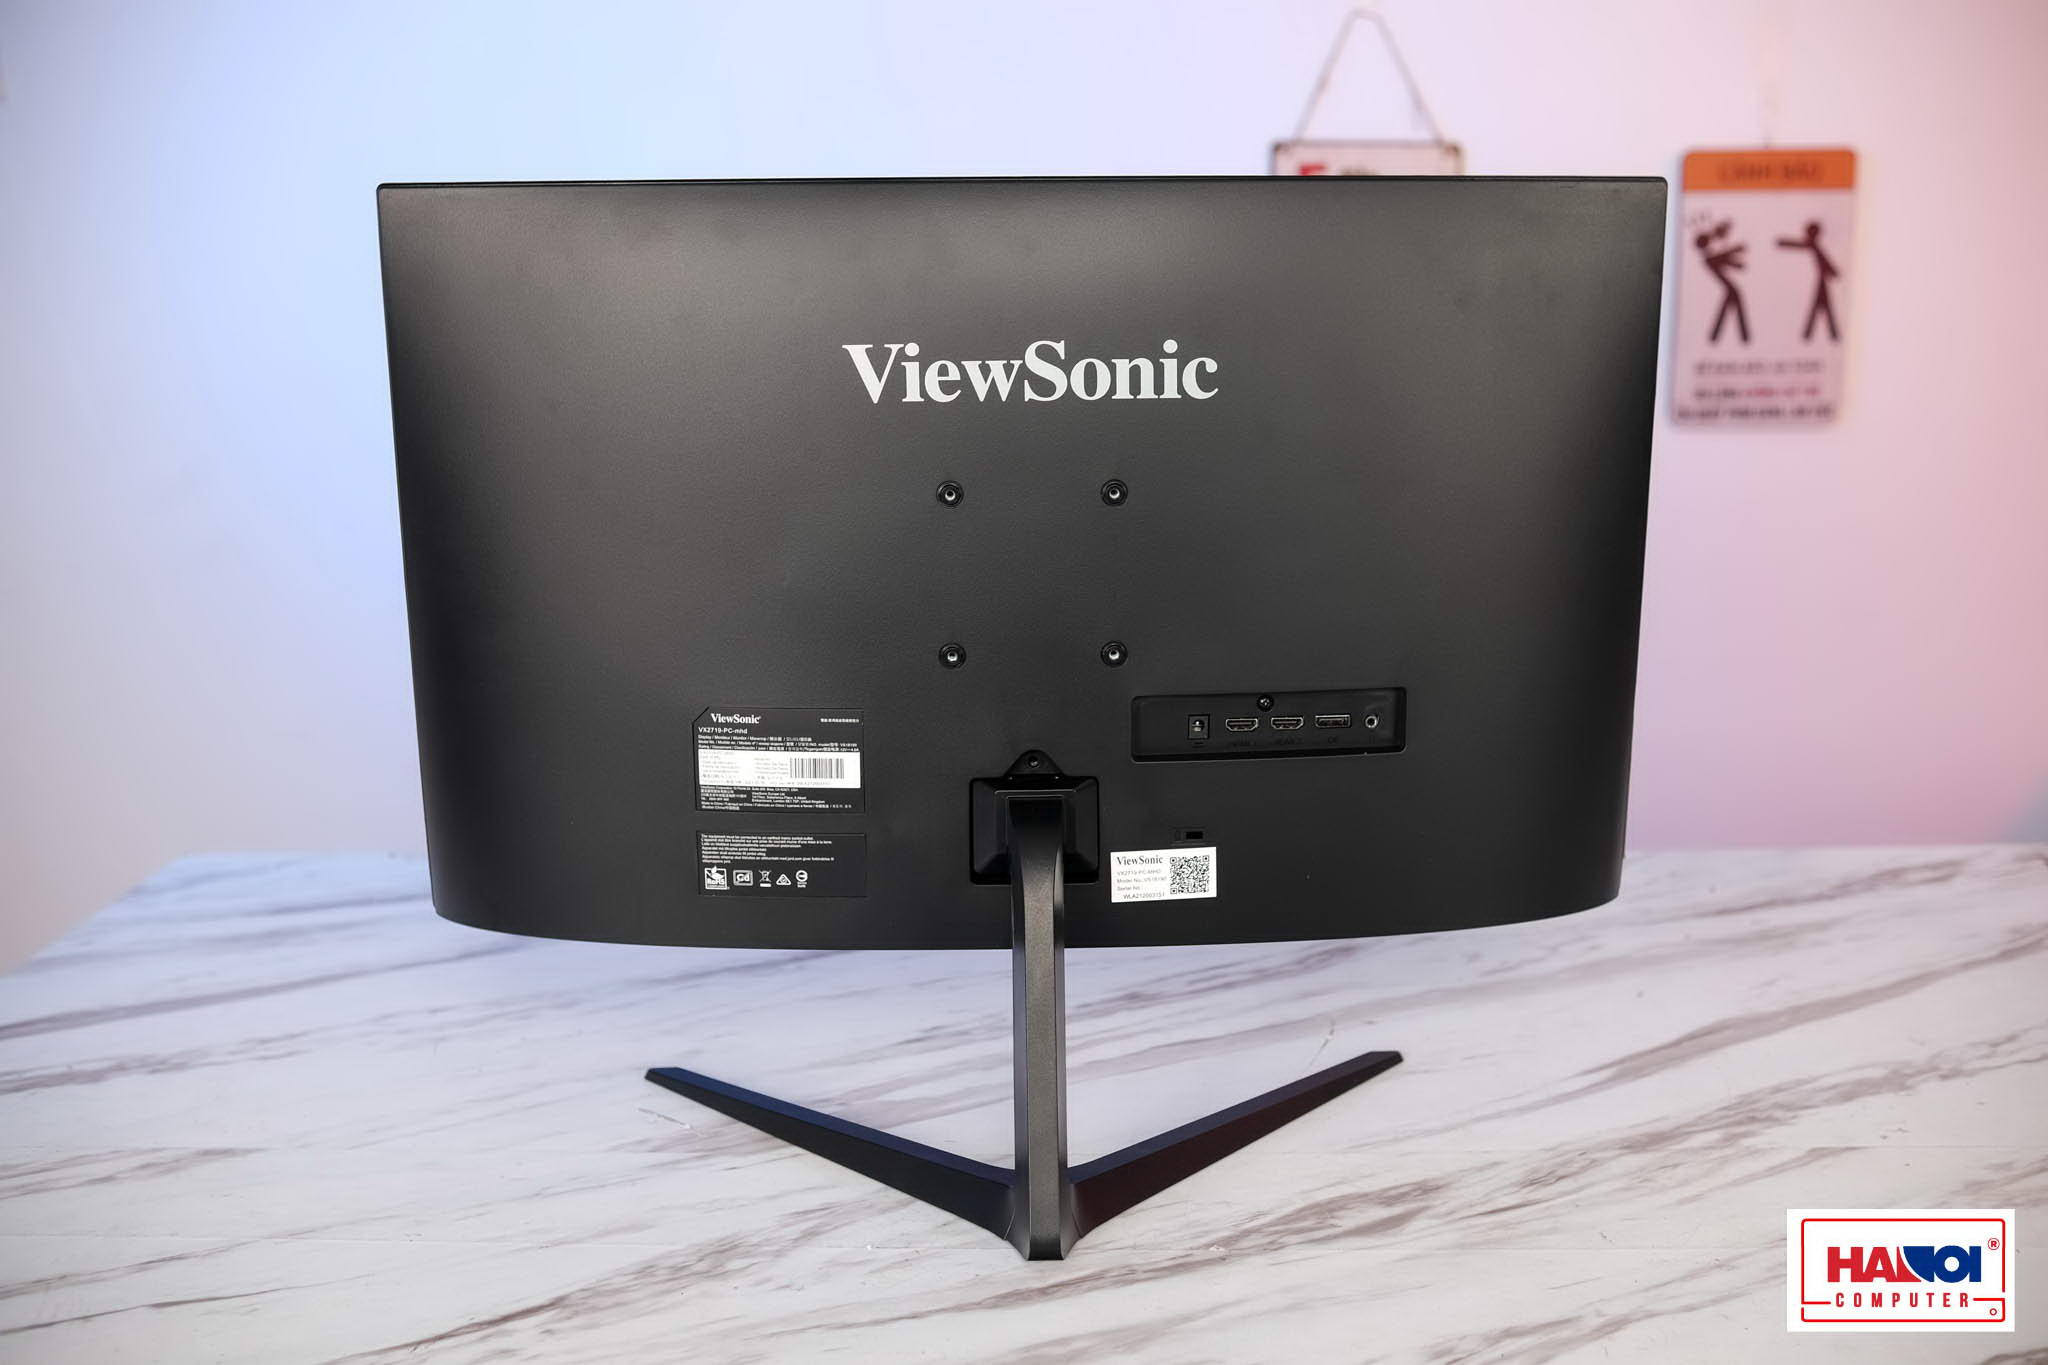 Màn hình Viewsonic VX2719-PC-MHD (27 inch/FHD/VA/240Hz/1ms/Cong)